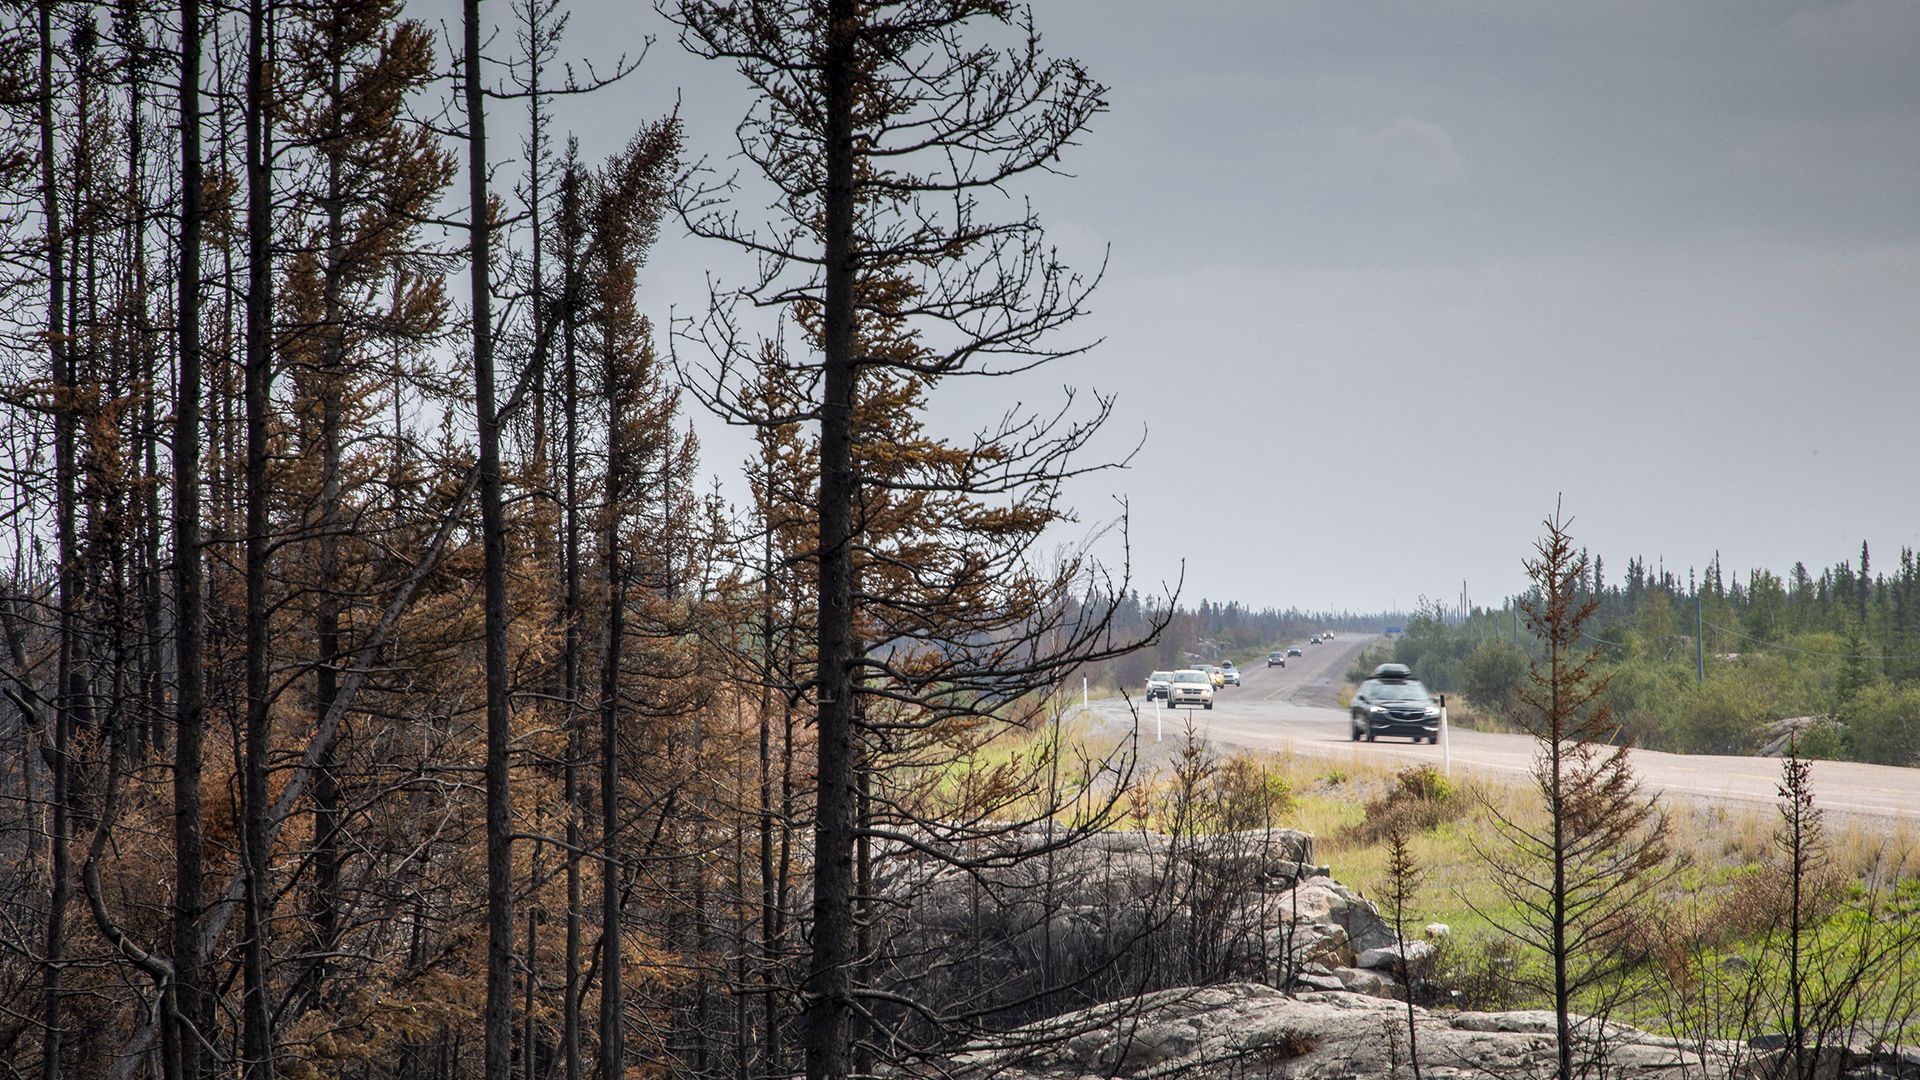 Des milliers de personnes ont quitté la ville de Yellowknife après l'avis d'évacuation émis par les autorités.